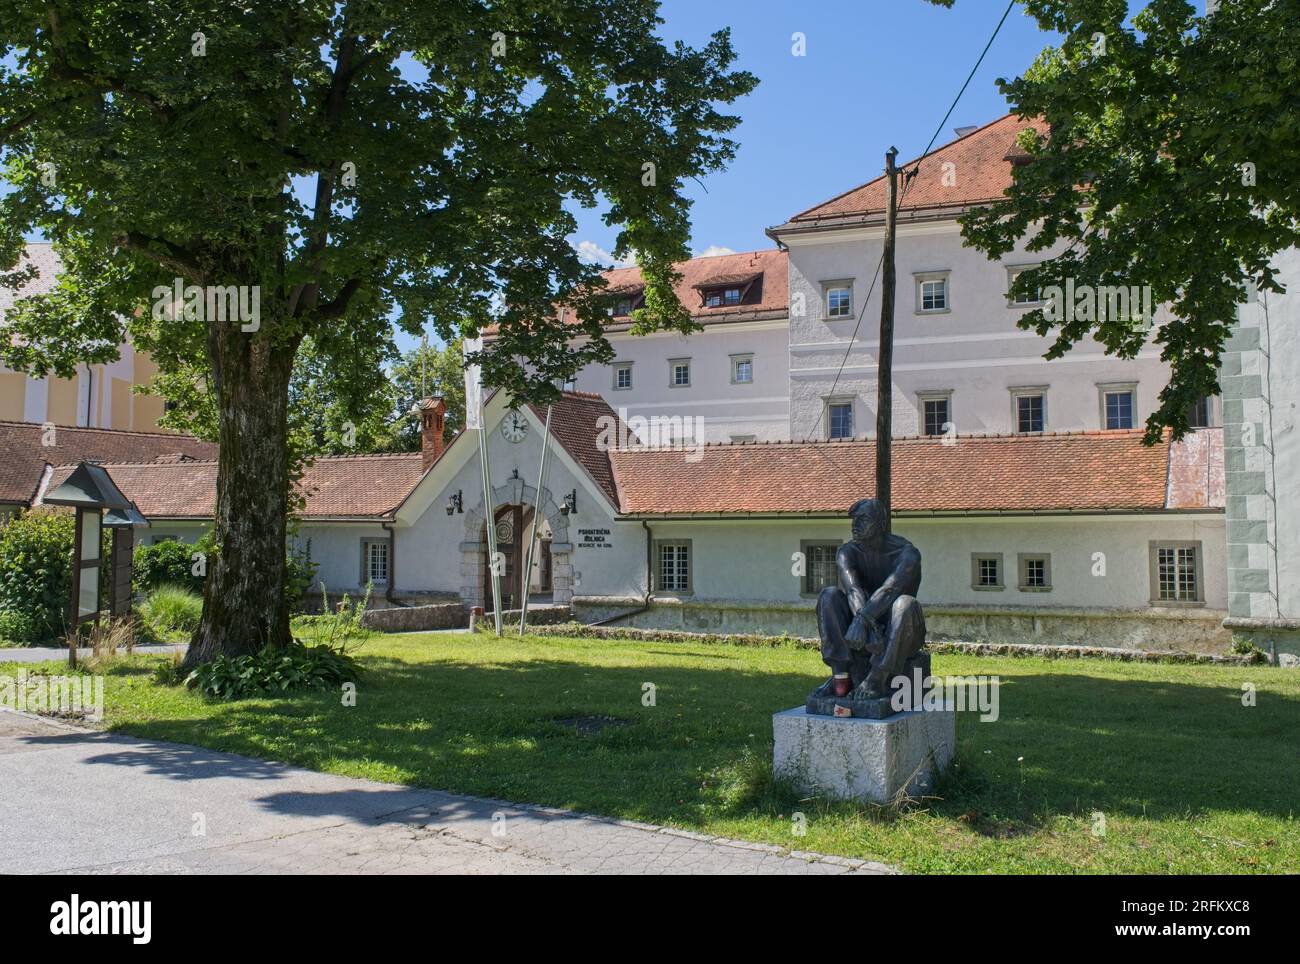 Begunje na Gorenjskem, Slovenia - 29 luglio 2023: Durante la seconda guerra mondiale, il castello di Kacenstajn fu usato come prigione della Gestapo. Più di 11.500 persone erano impr Foto Stock